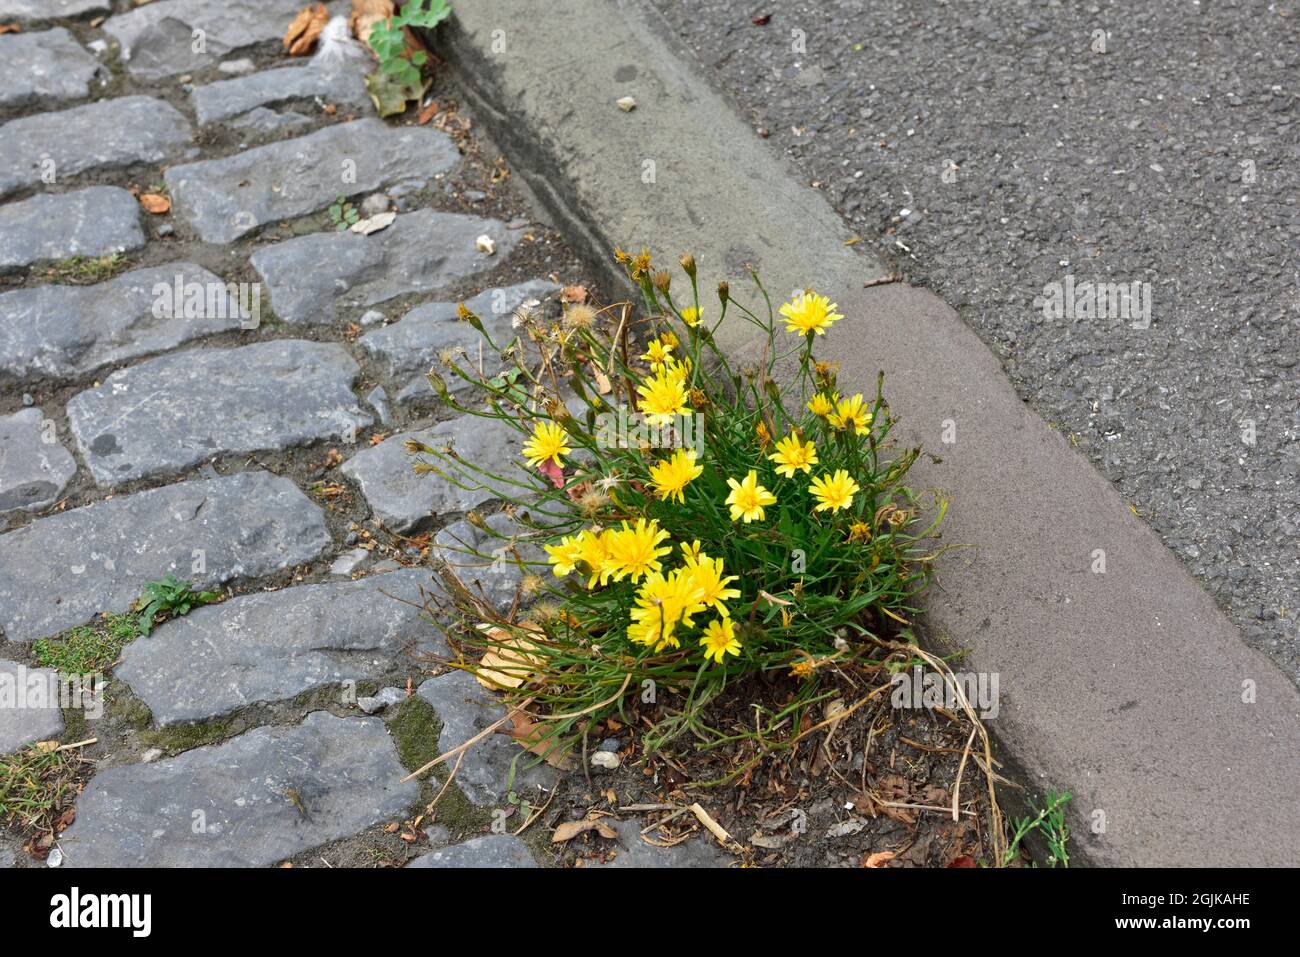 Mauvaises herbes avec des fleurs jaunes poussant dans les fissures de la chaussée de la route, Royaume-Uni Banque D'Images